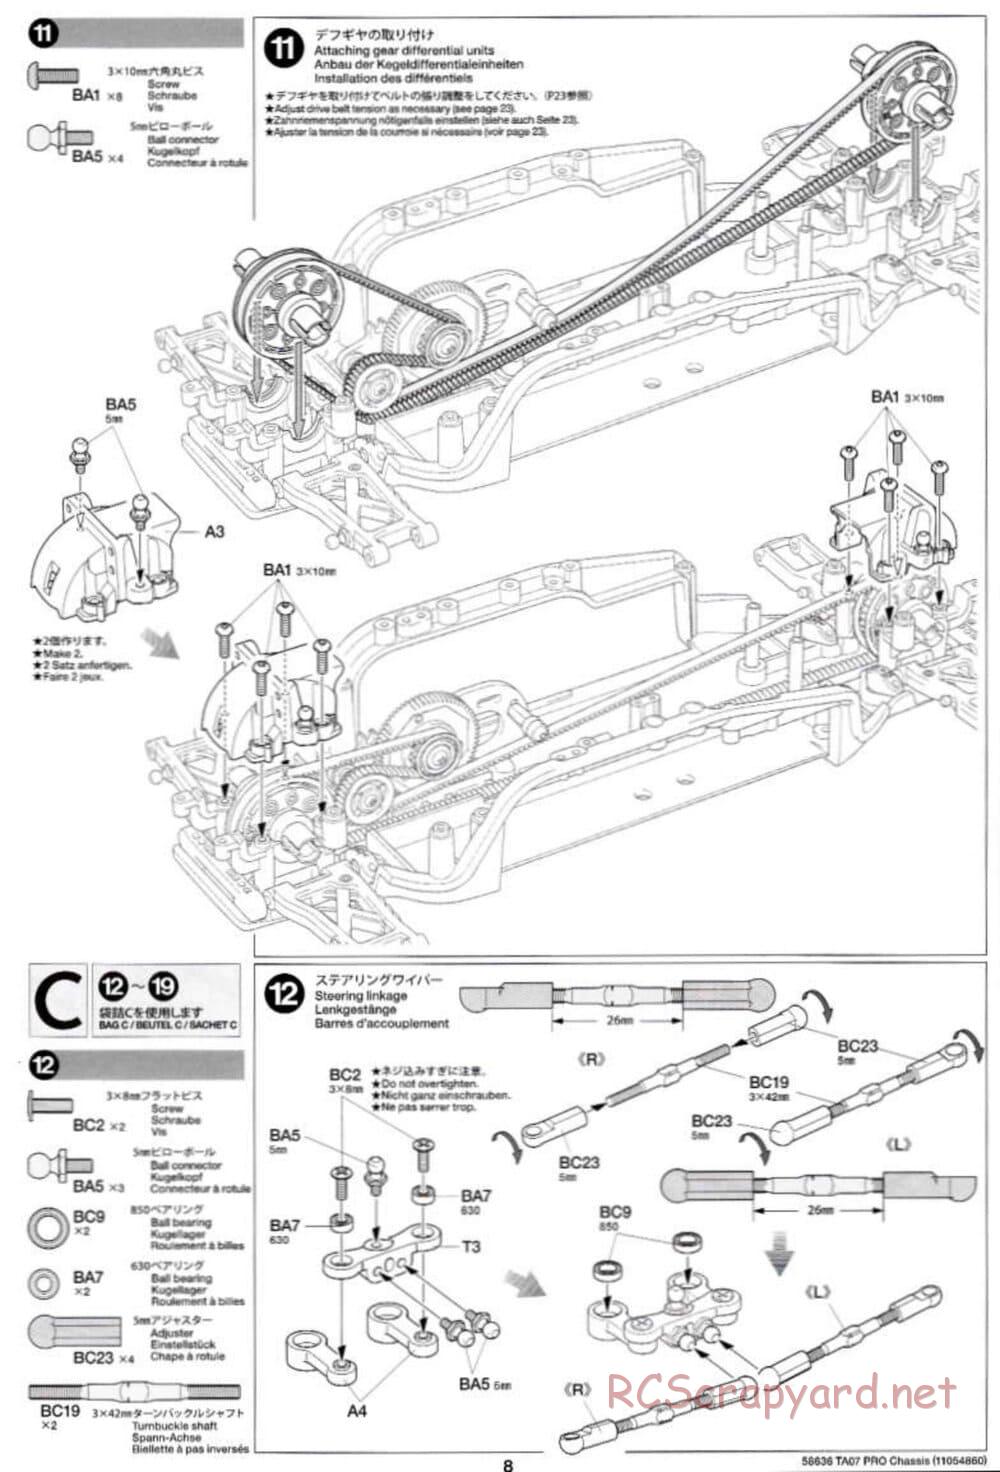 Tamiya - TA07 Pro Chassis - Manual - Page 8